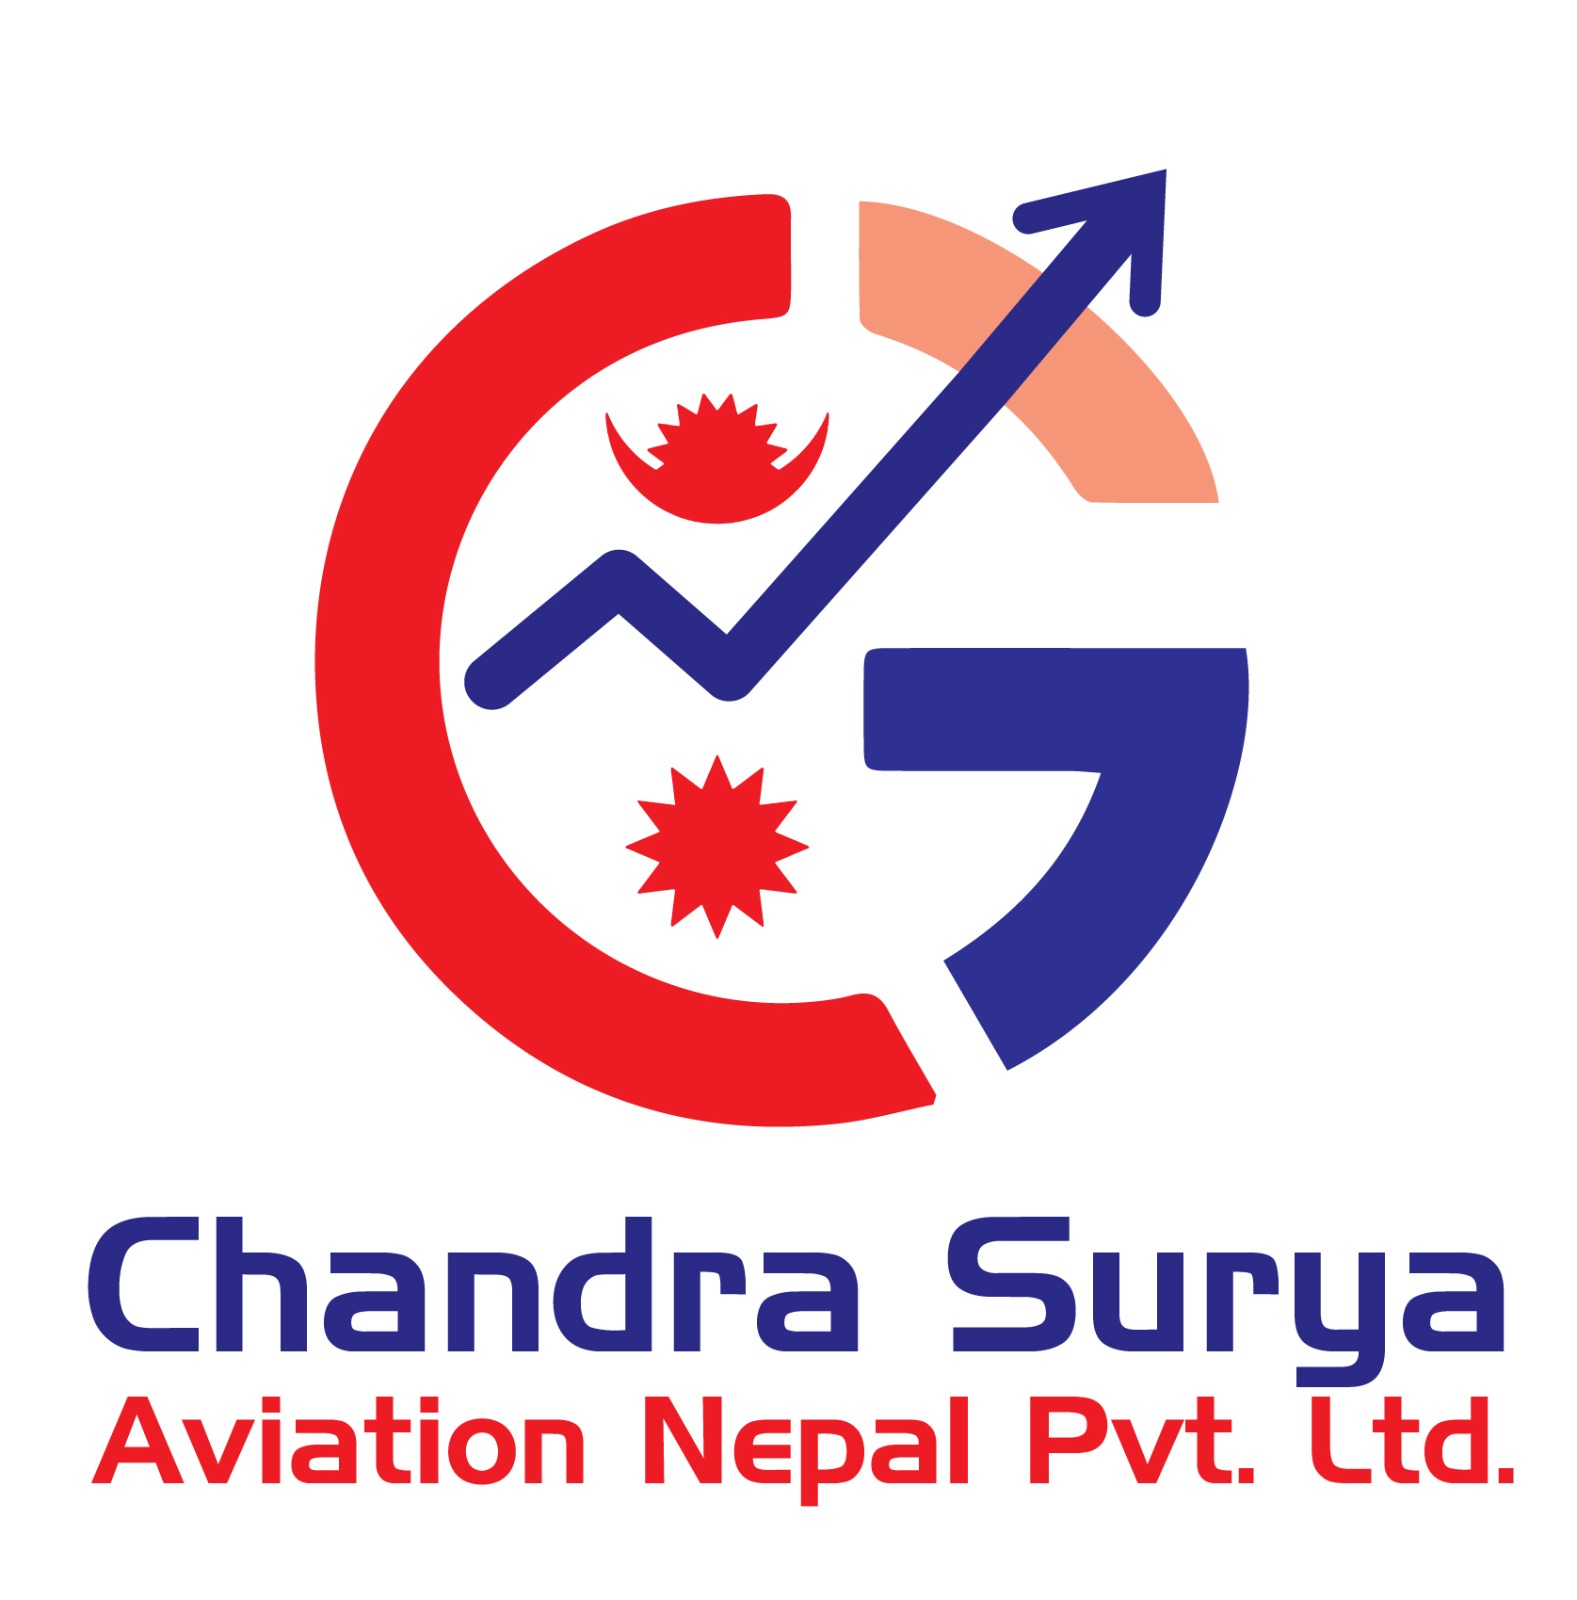 Chandra Surya Aviation